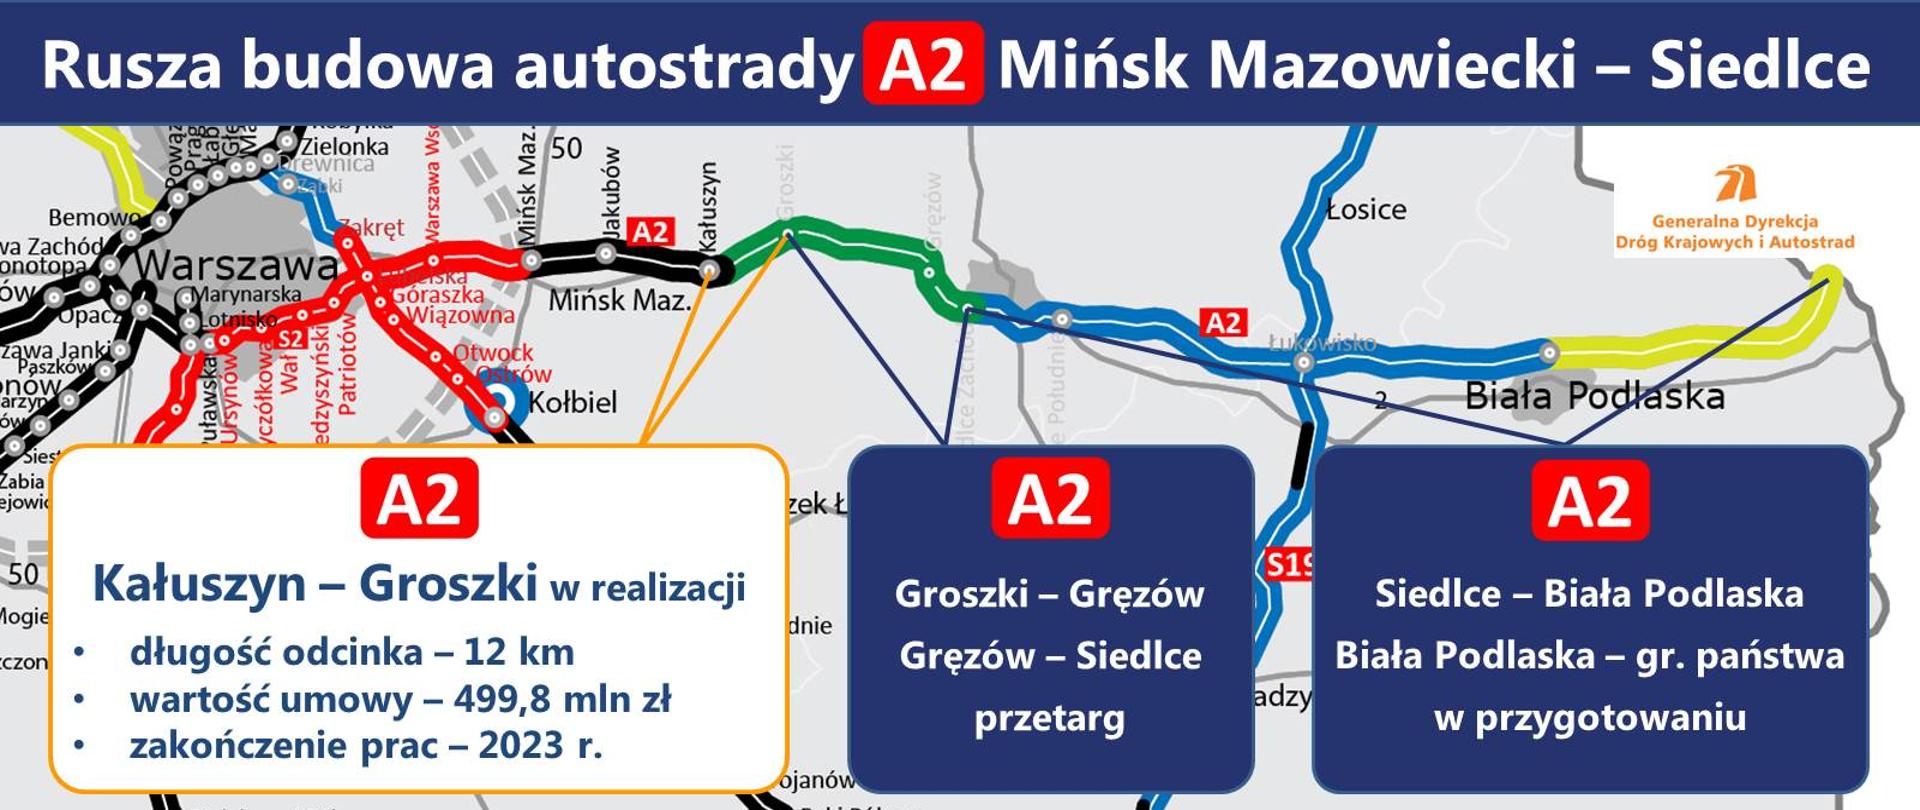 Rusza budowy autostrady A2 Mińsk Mazowiecki - Siedlce - infografika